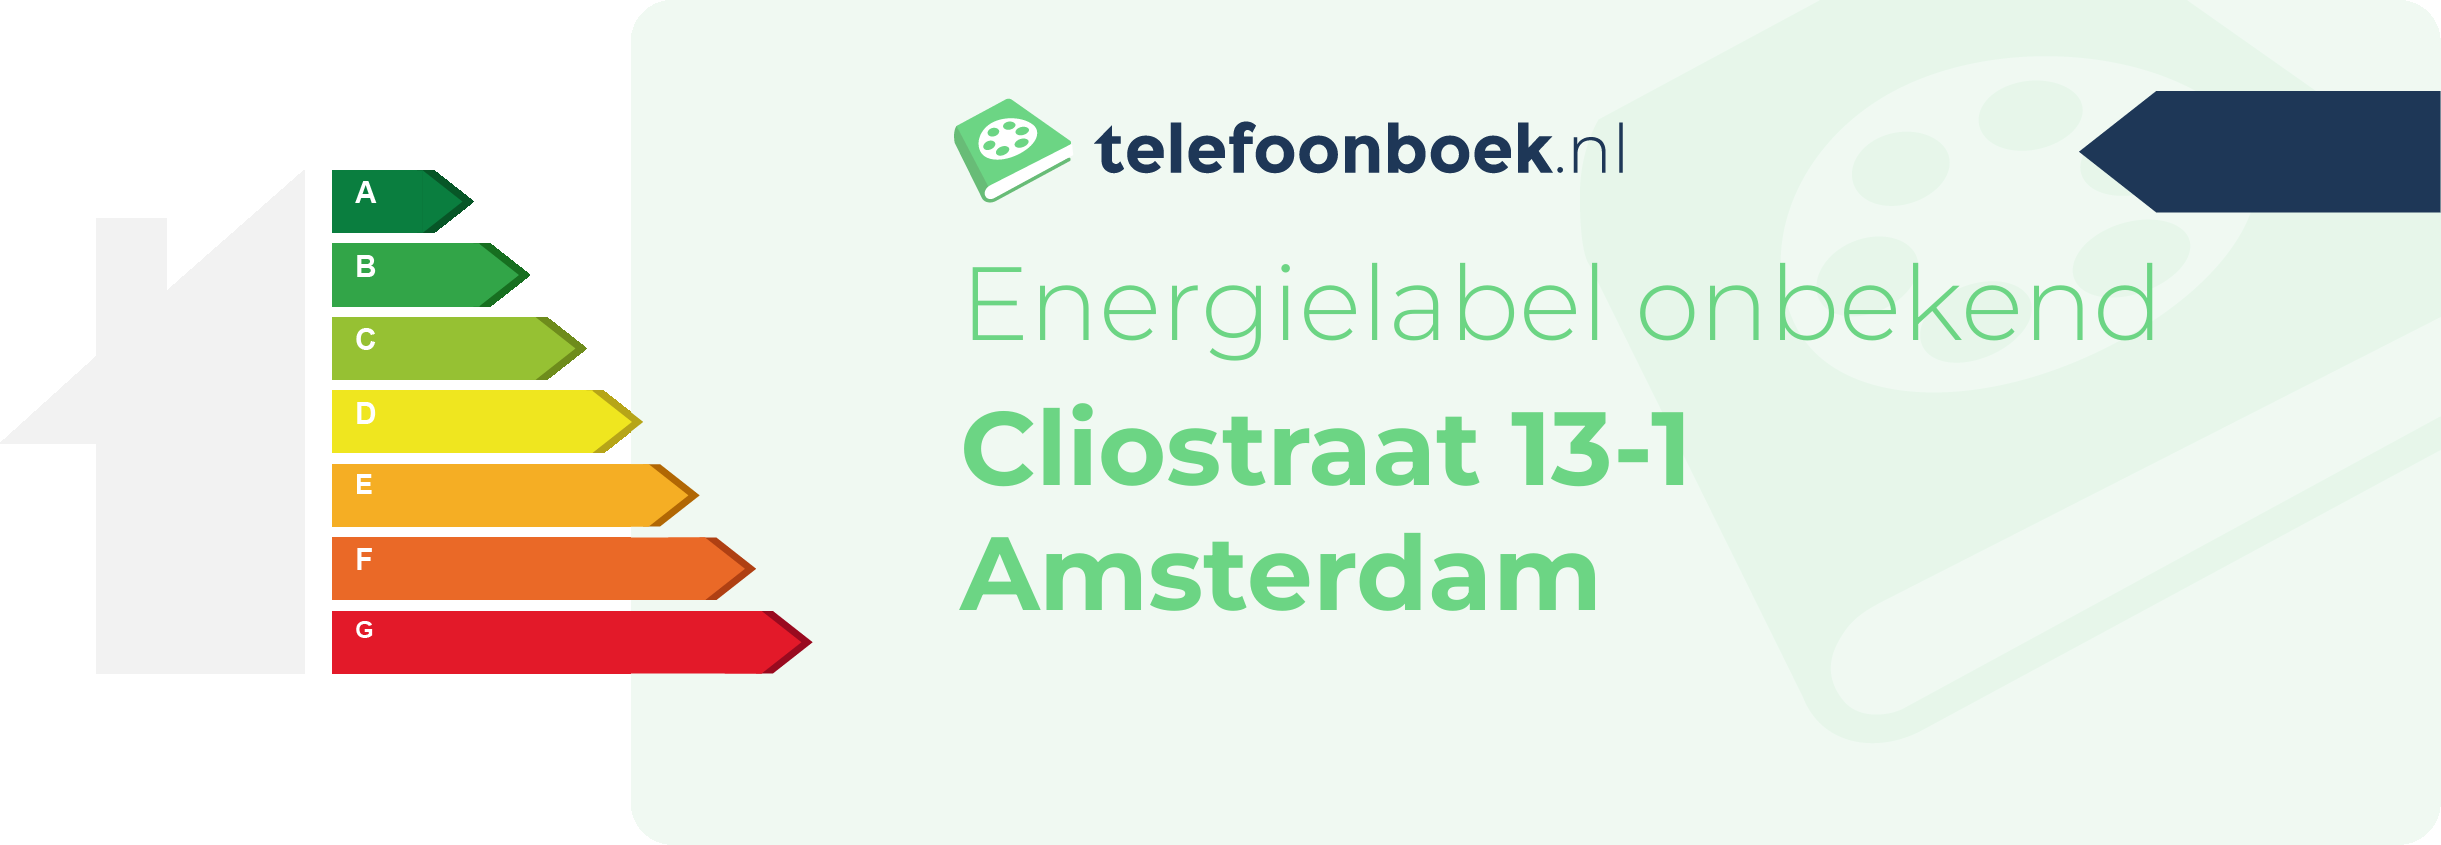 Energielabel Cliostraat 13-1 Amsterdam